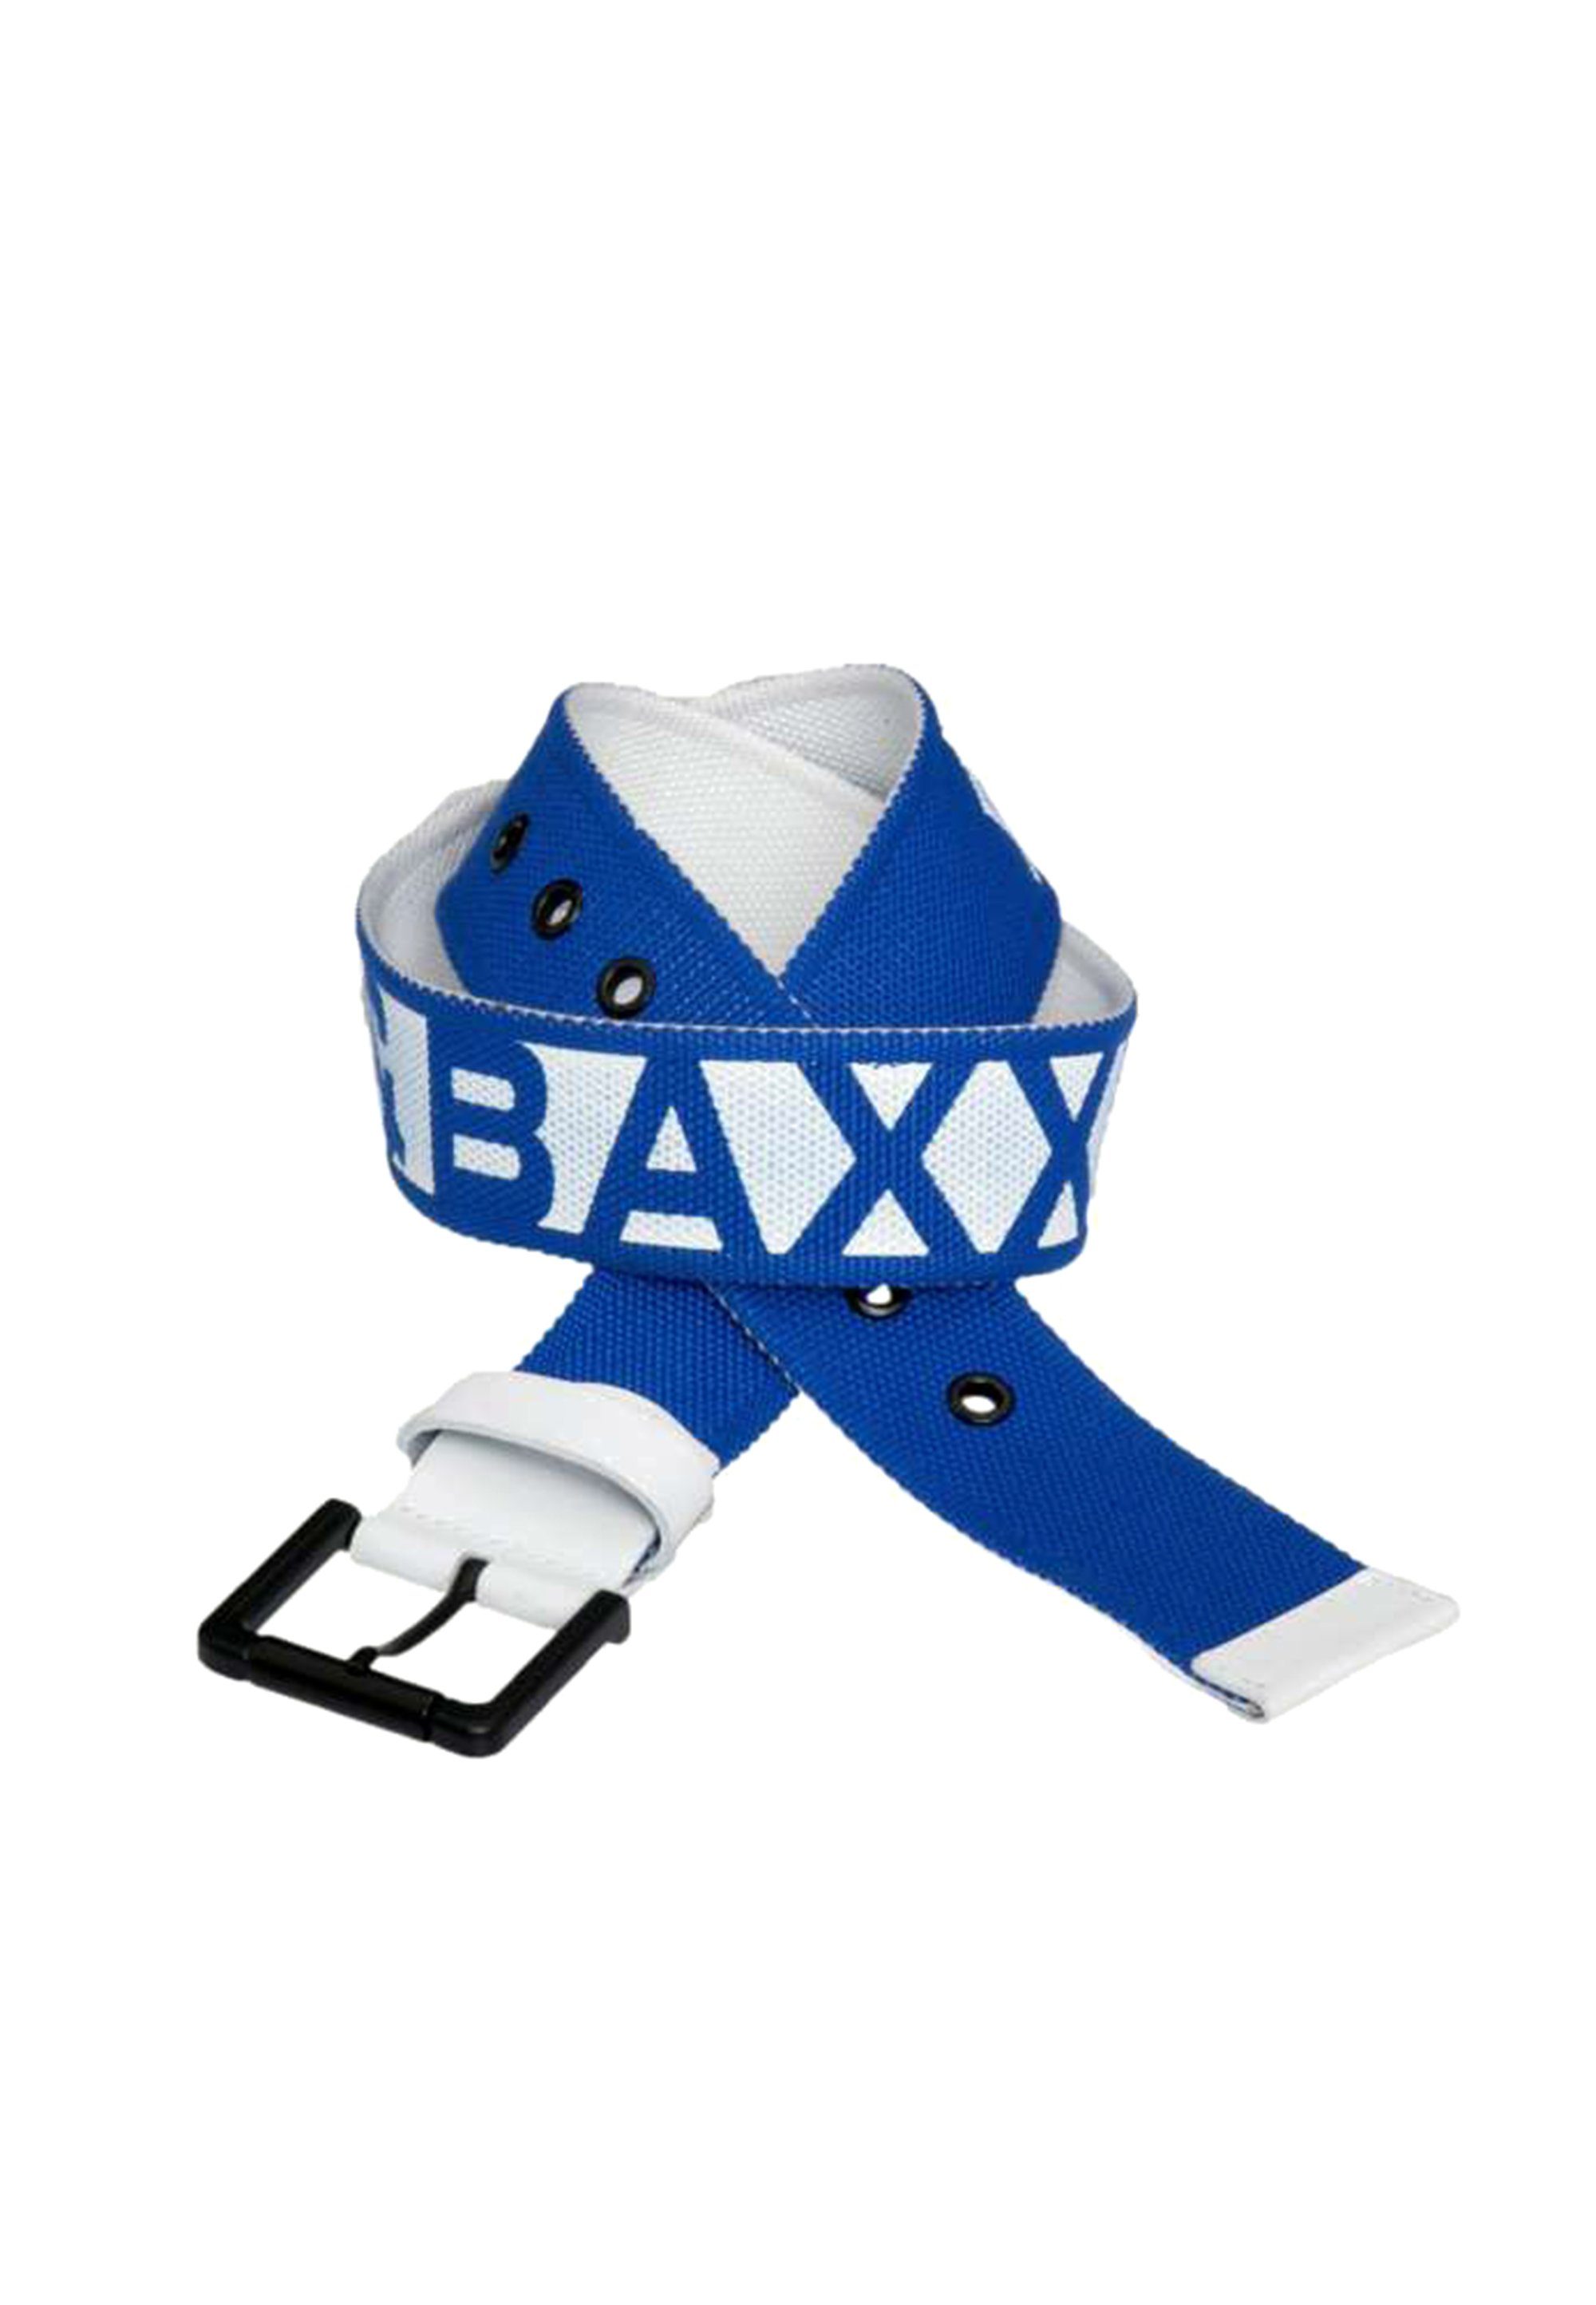 & coolem blau-weiß Stoffgürtel Baxx mit Cipo Markendesign